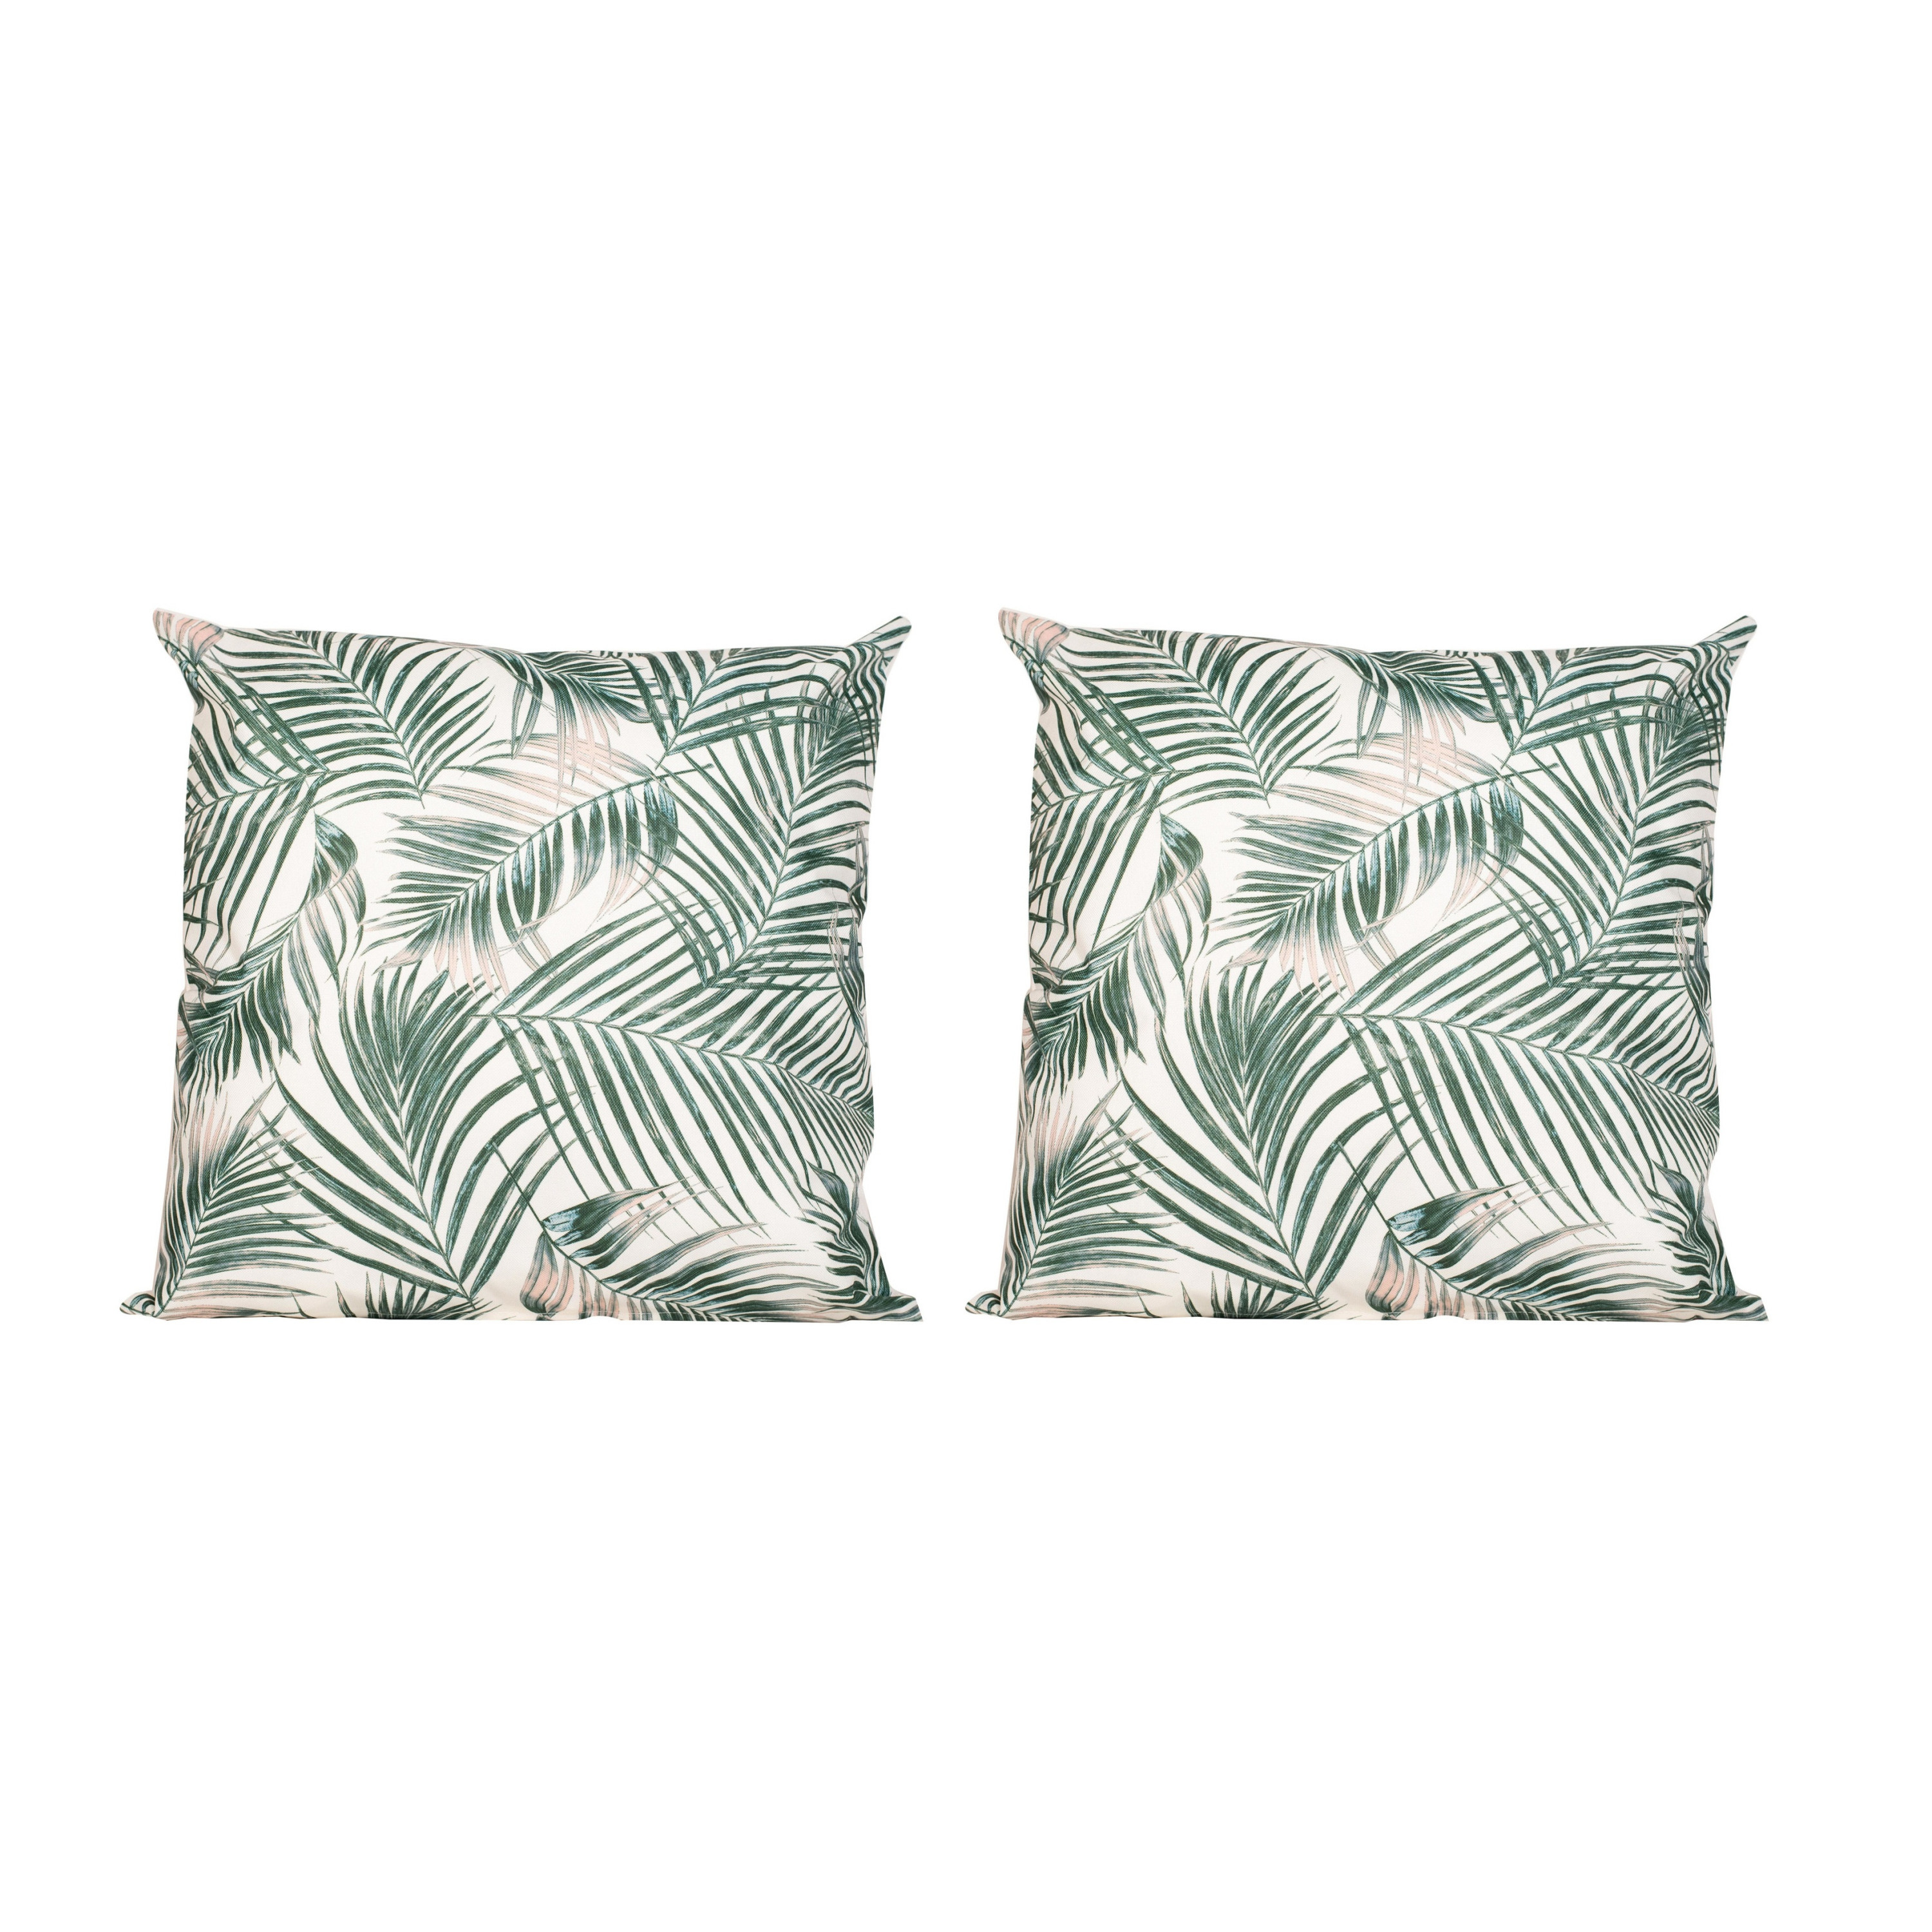 2x Bank-sier kussens met palm plant-bladeren print voor binnen en buiten 45 x 45 cm